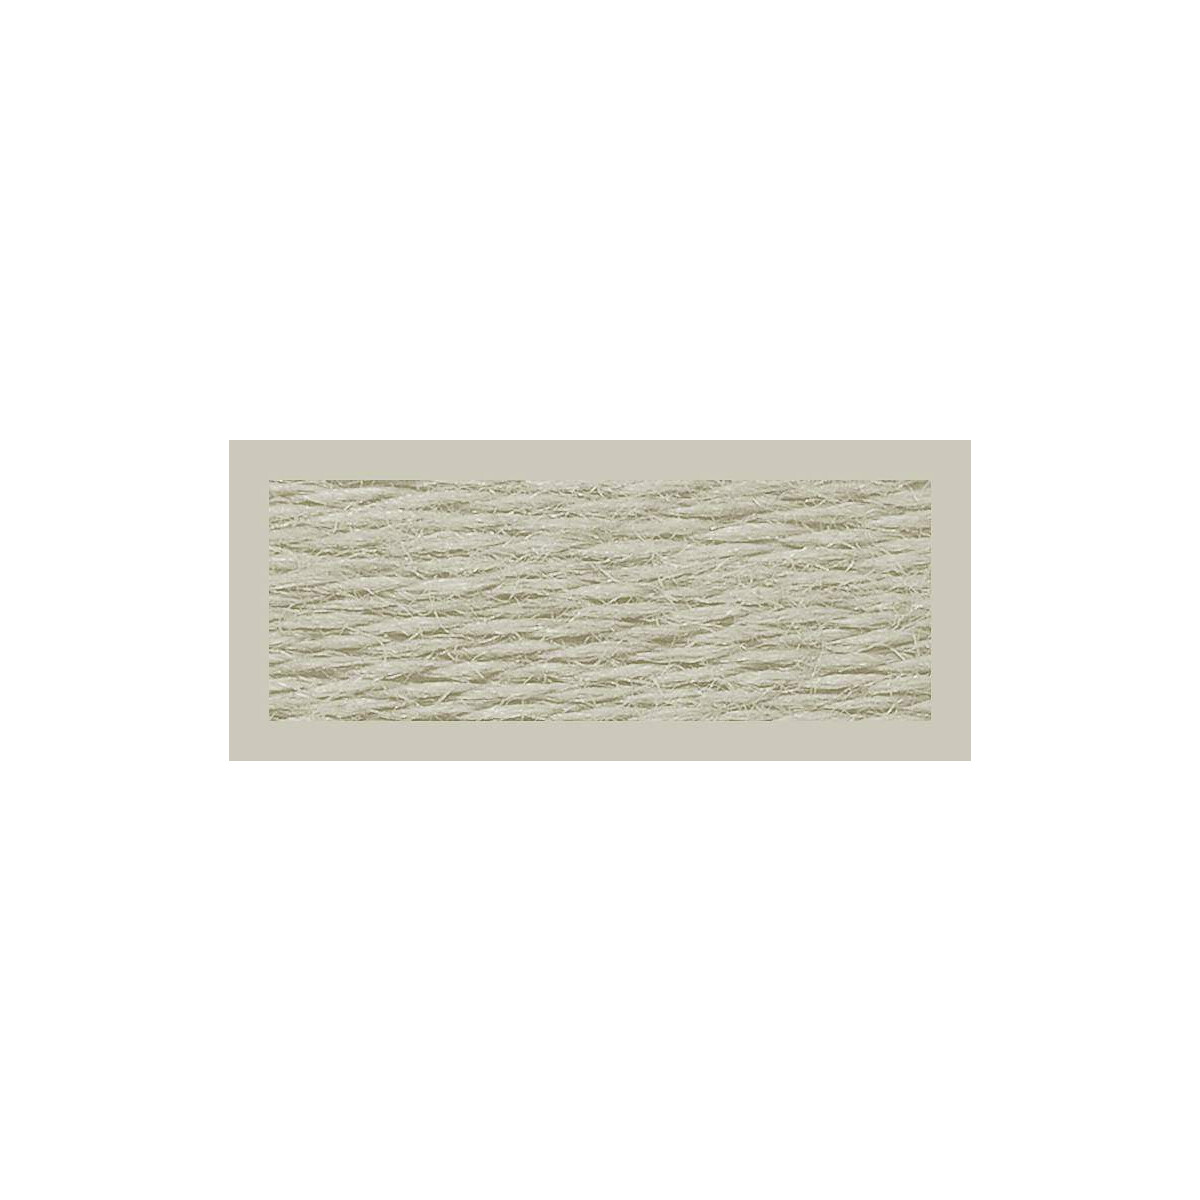 fil à broder riolis s950 laine / fil acrylique, 1...